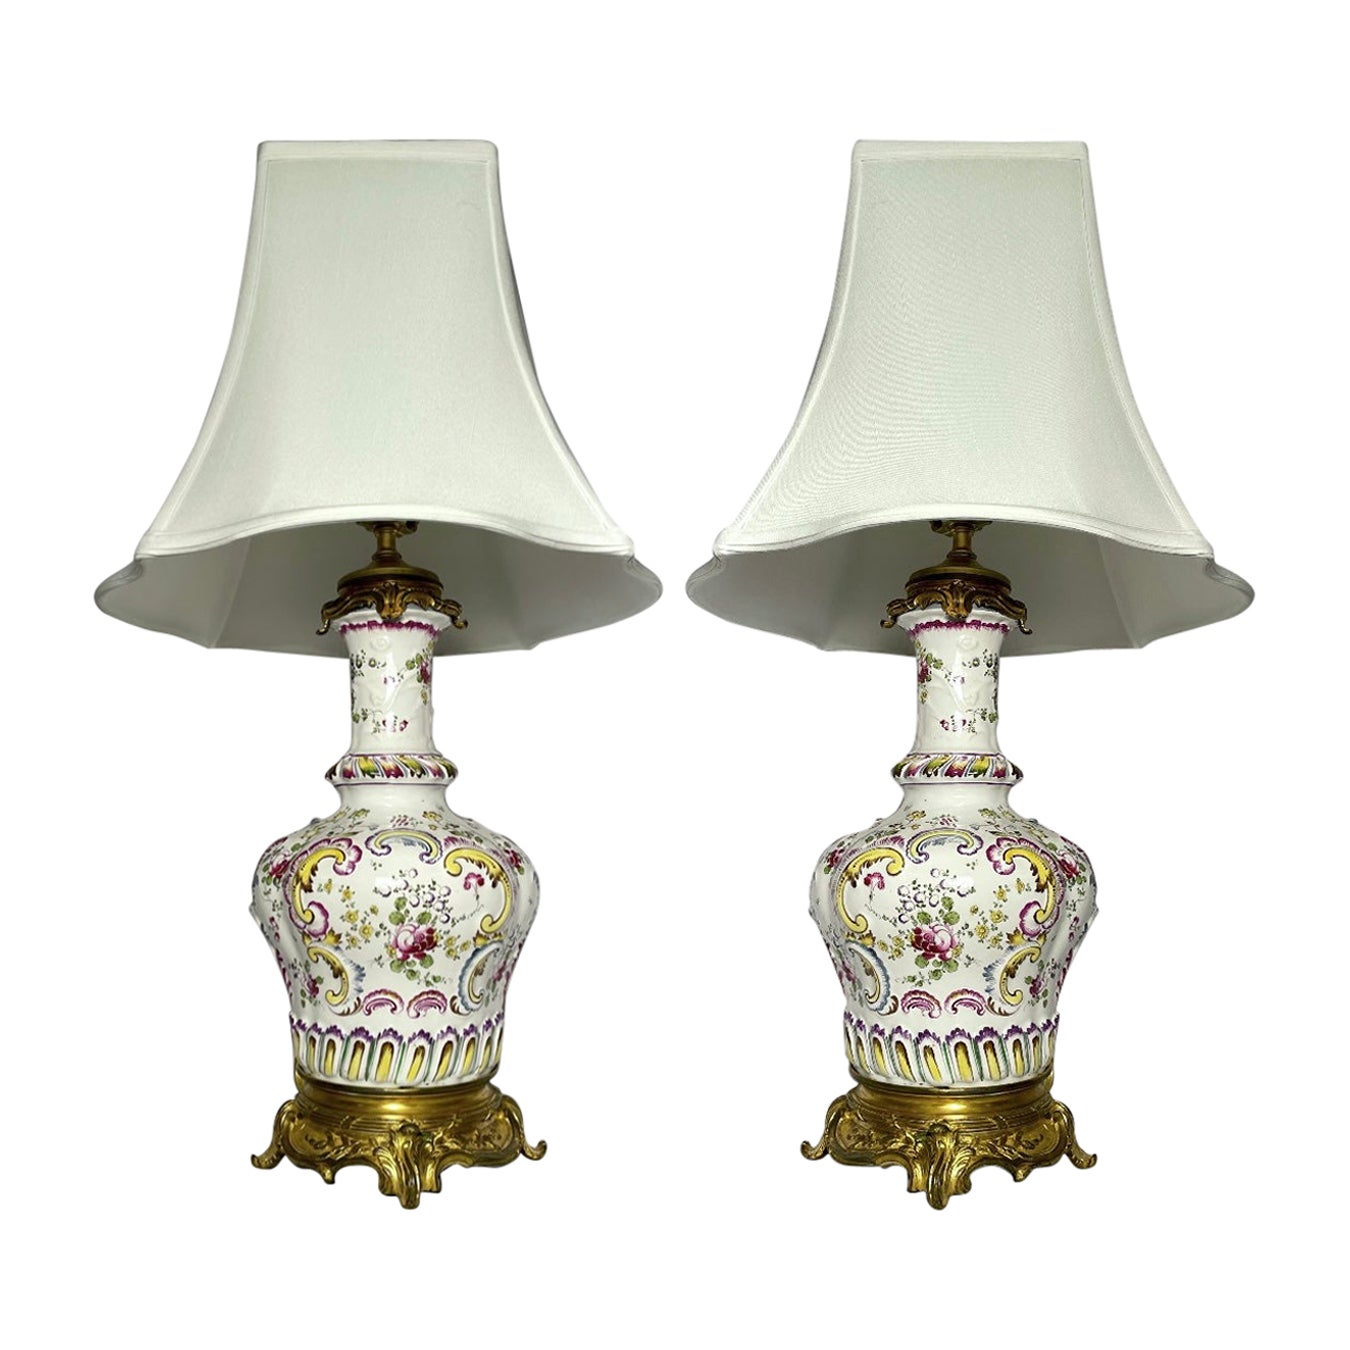 Lámparas antiguas francesas montadas en porcelana y bronce dorado, hacia 1890.